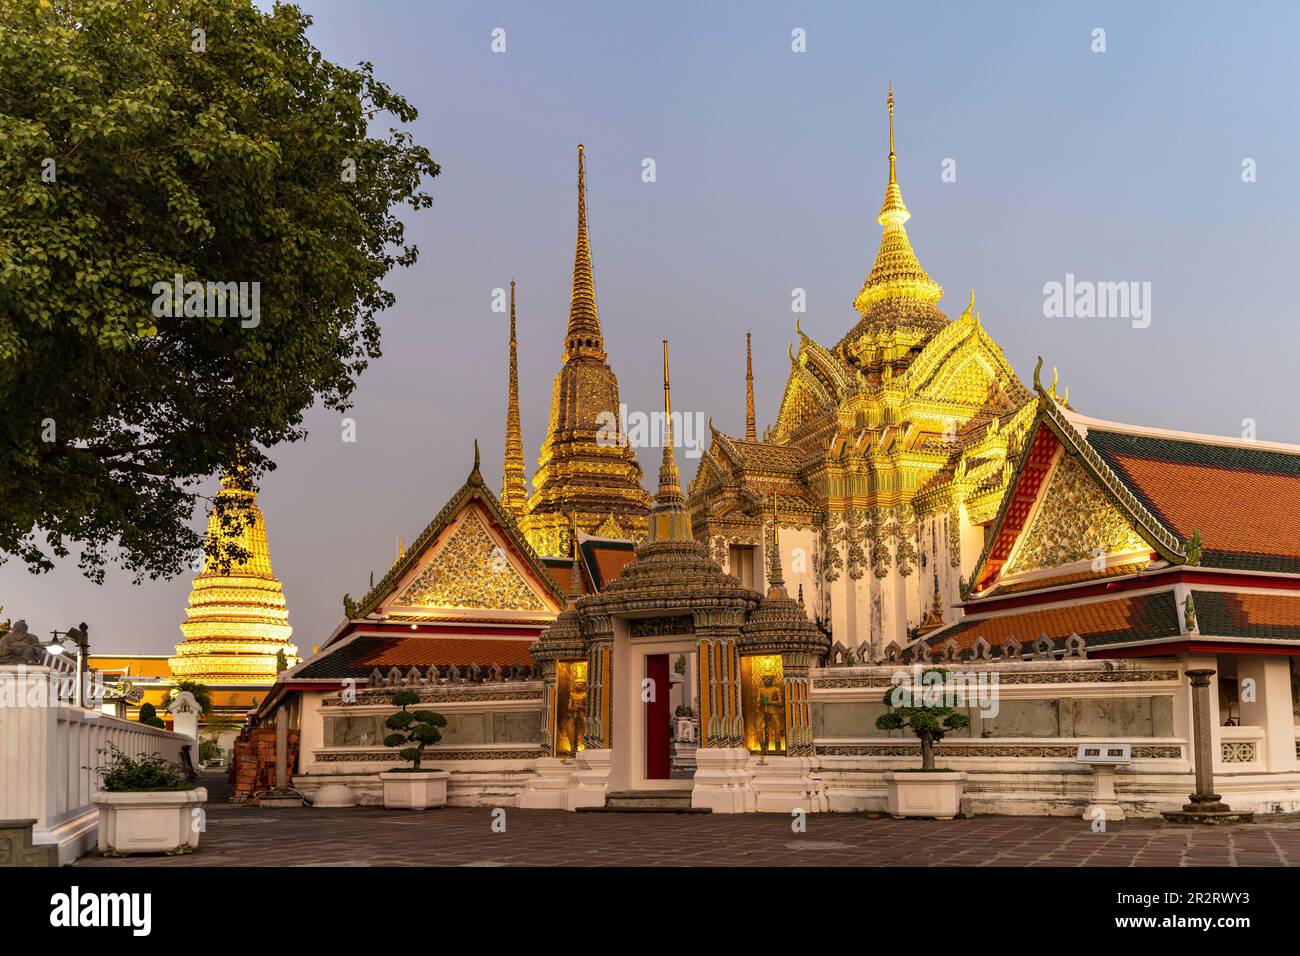 Phra Mondop Bibliothek des buddhistischen Tempel Wat Pho in der Abenddämmerung, Bangkok, Thailand, Asien   |   Phra Mondop Scripture Hall at the Buddh Stock Photo